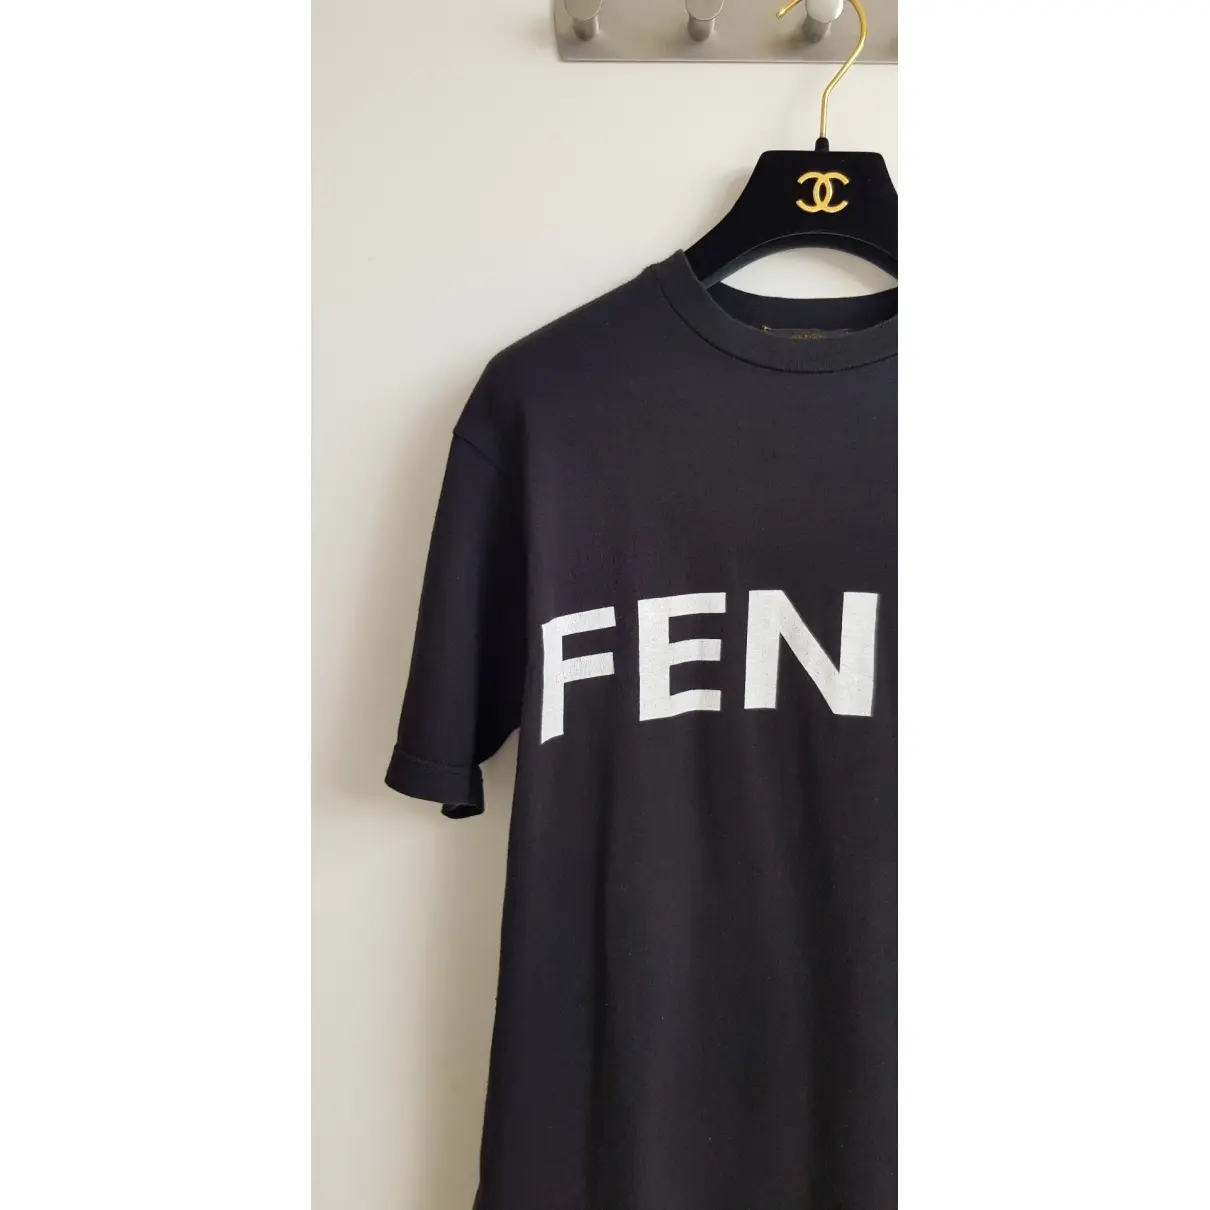 T-shirt Fendi